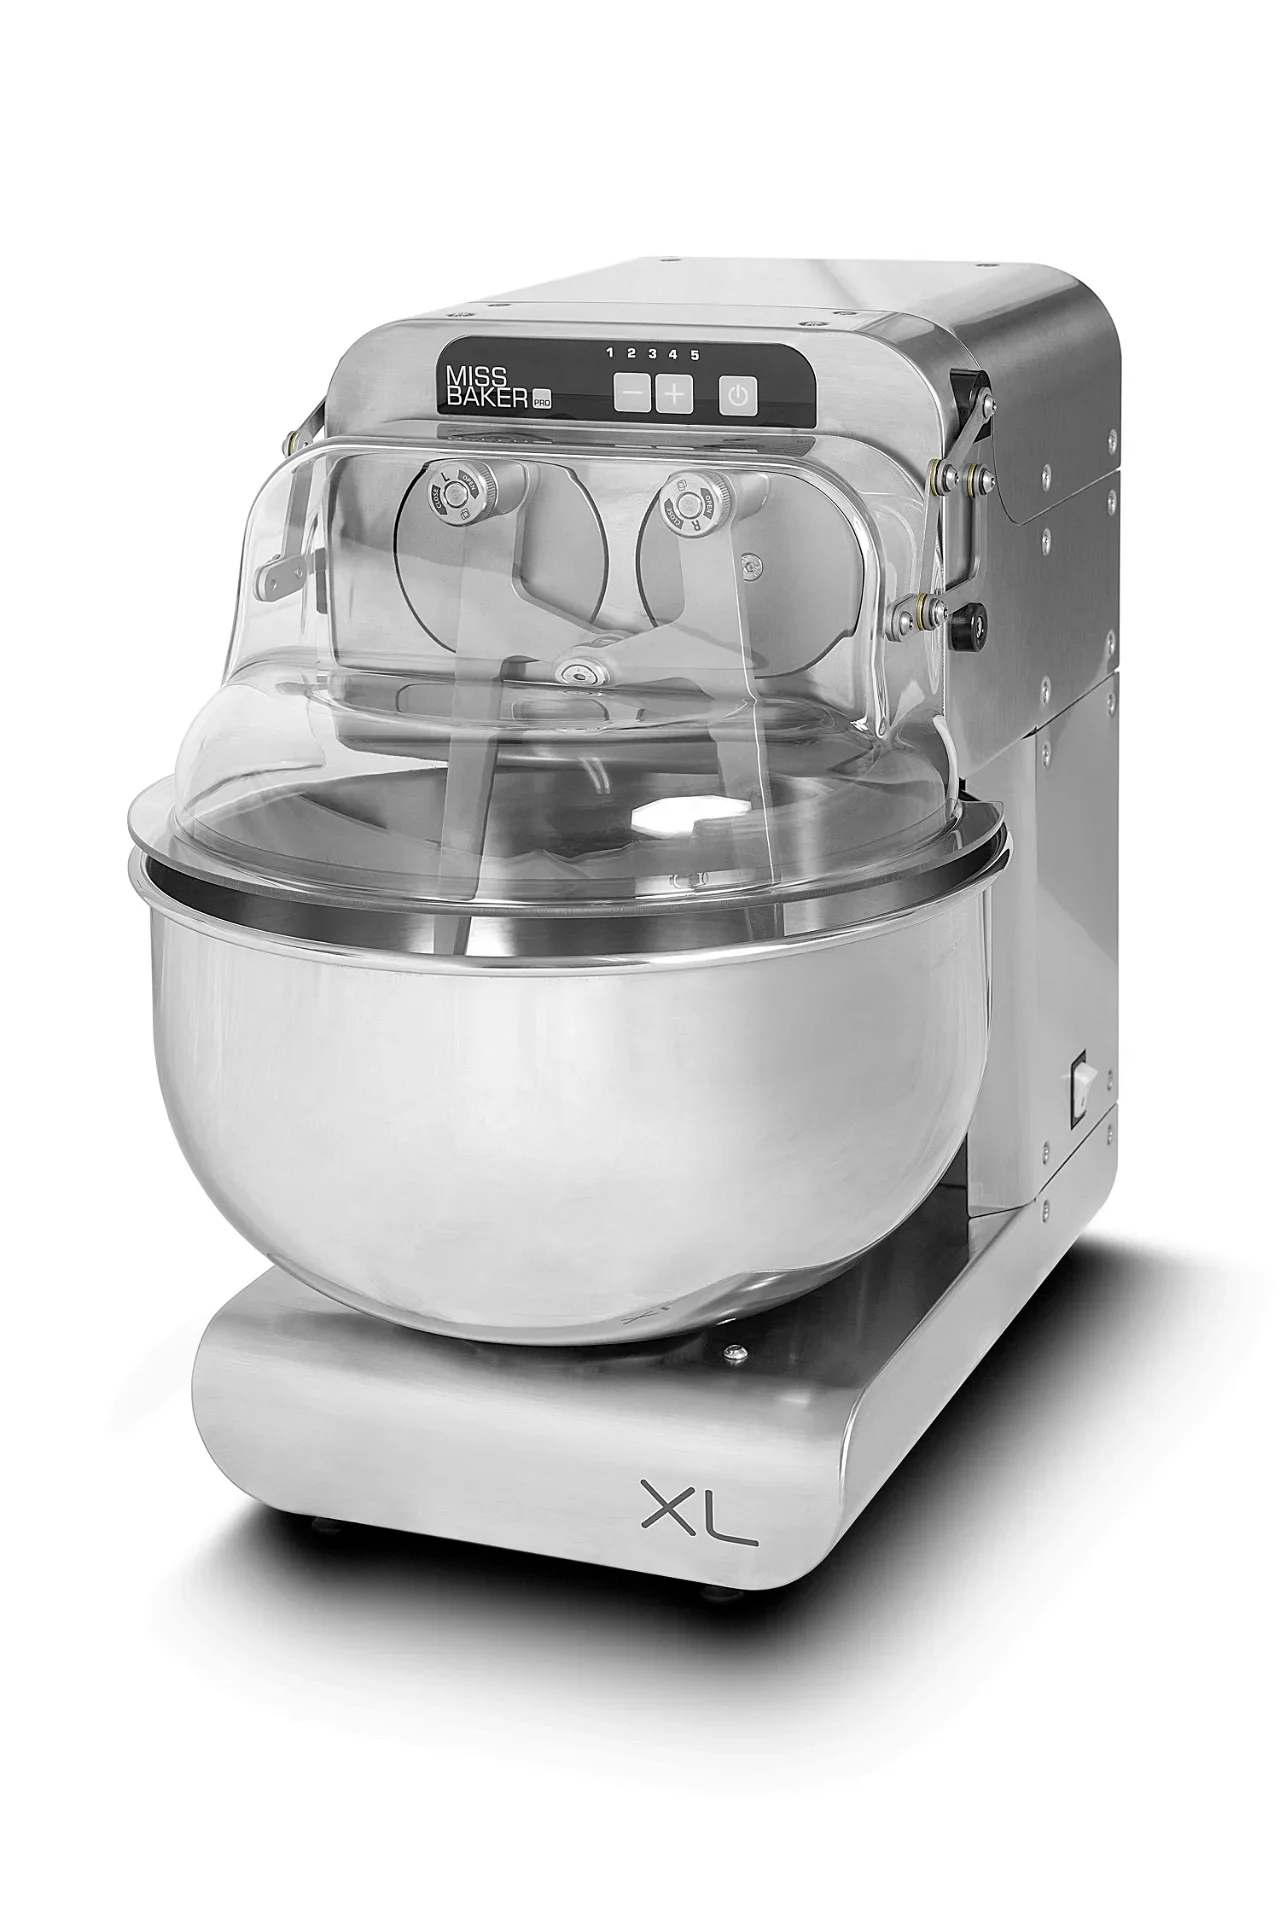 Bernardi Miss Baker Pro XL dough mixer, 8kg, 500 watt, stainless steel